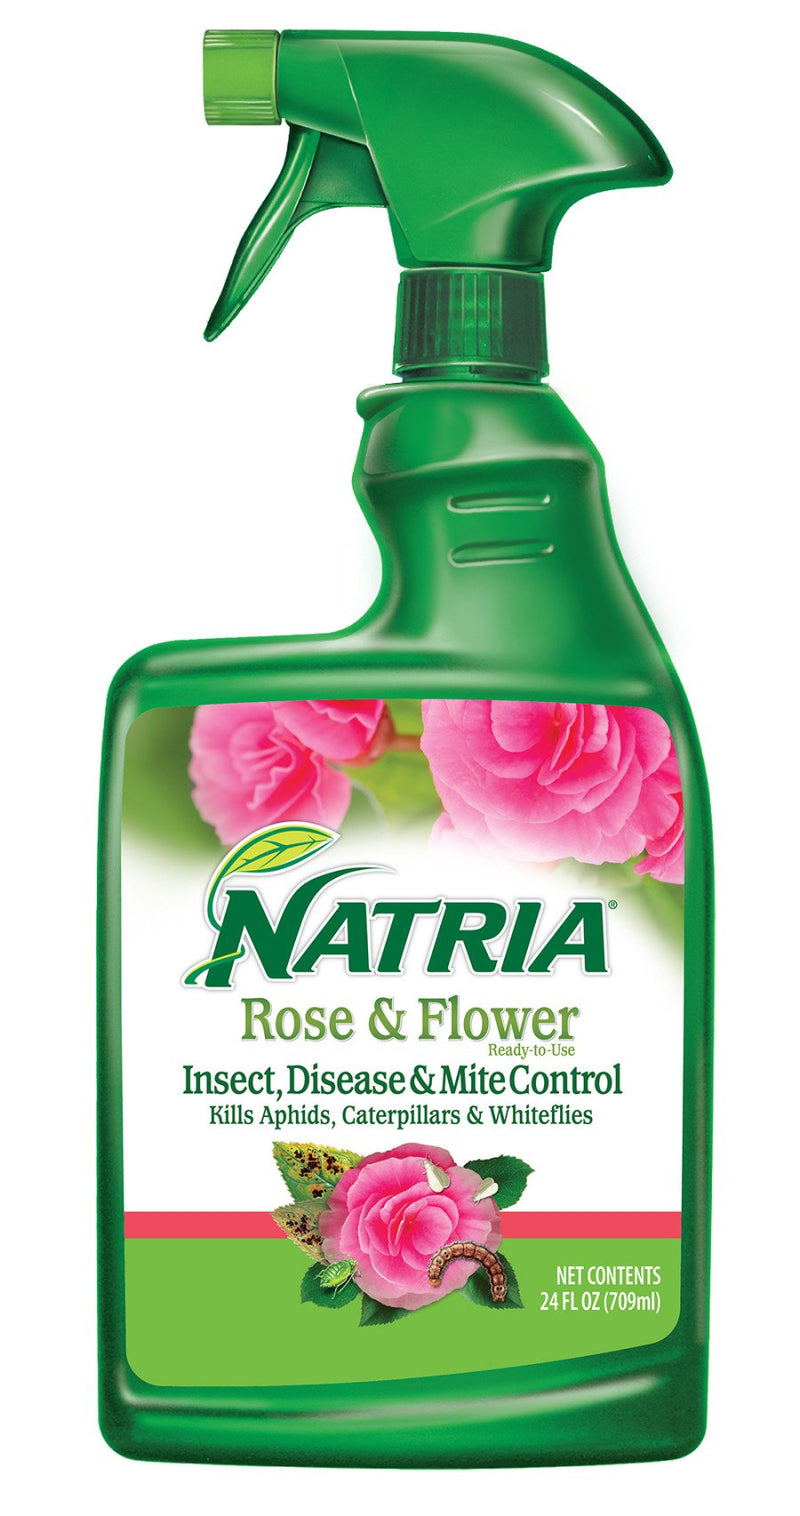 Bioadvanced Natria Rose & Flower Insect Disease & Mite Control RTU 24 Fl Oz